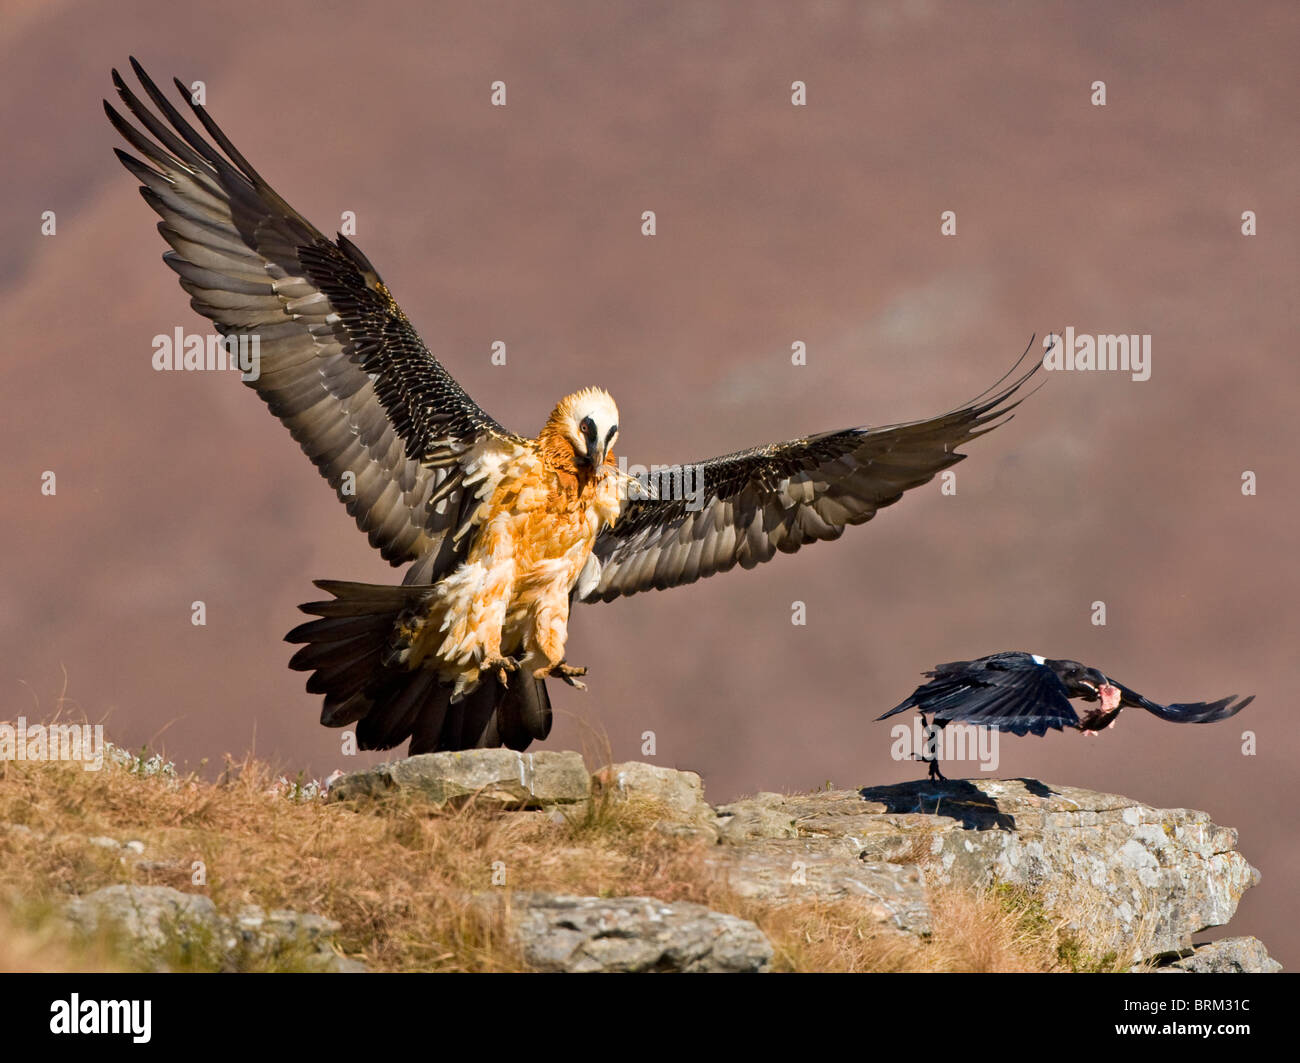 Gipeto (Lammergeier) in atterraggio a un avvoltoio ristorante come un pied crow vola fuori con un frammento osseo Foto Stock